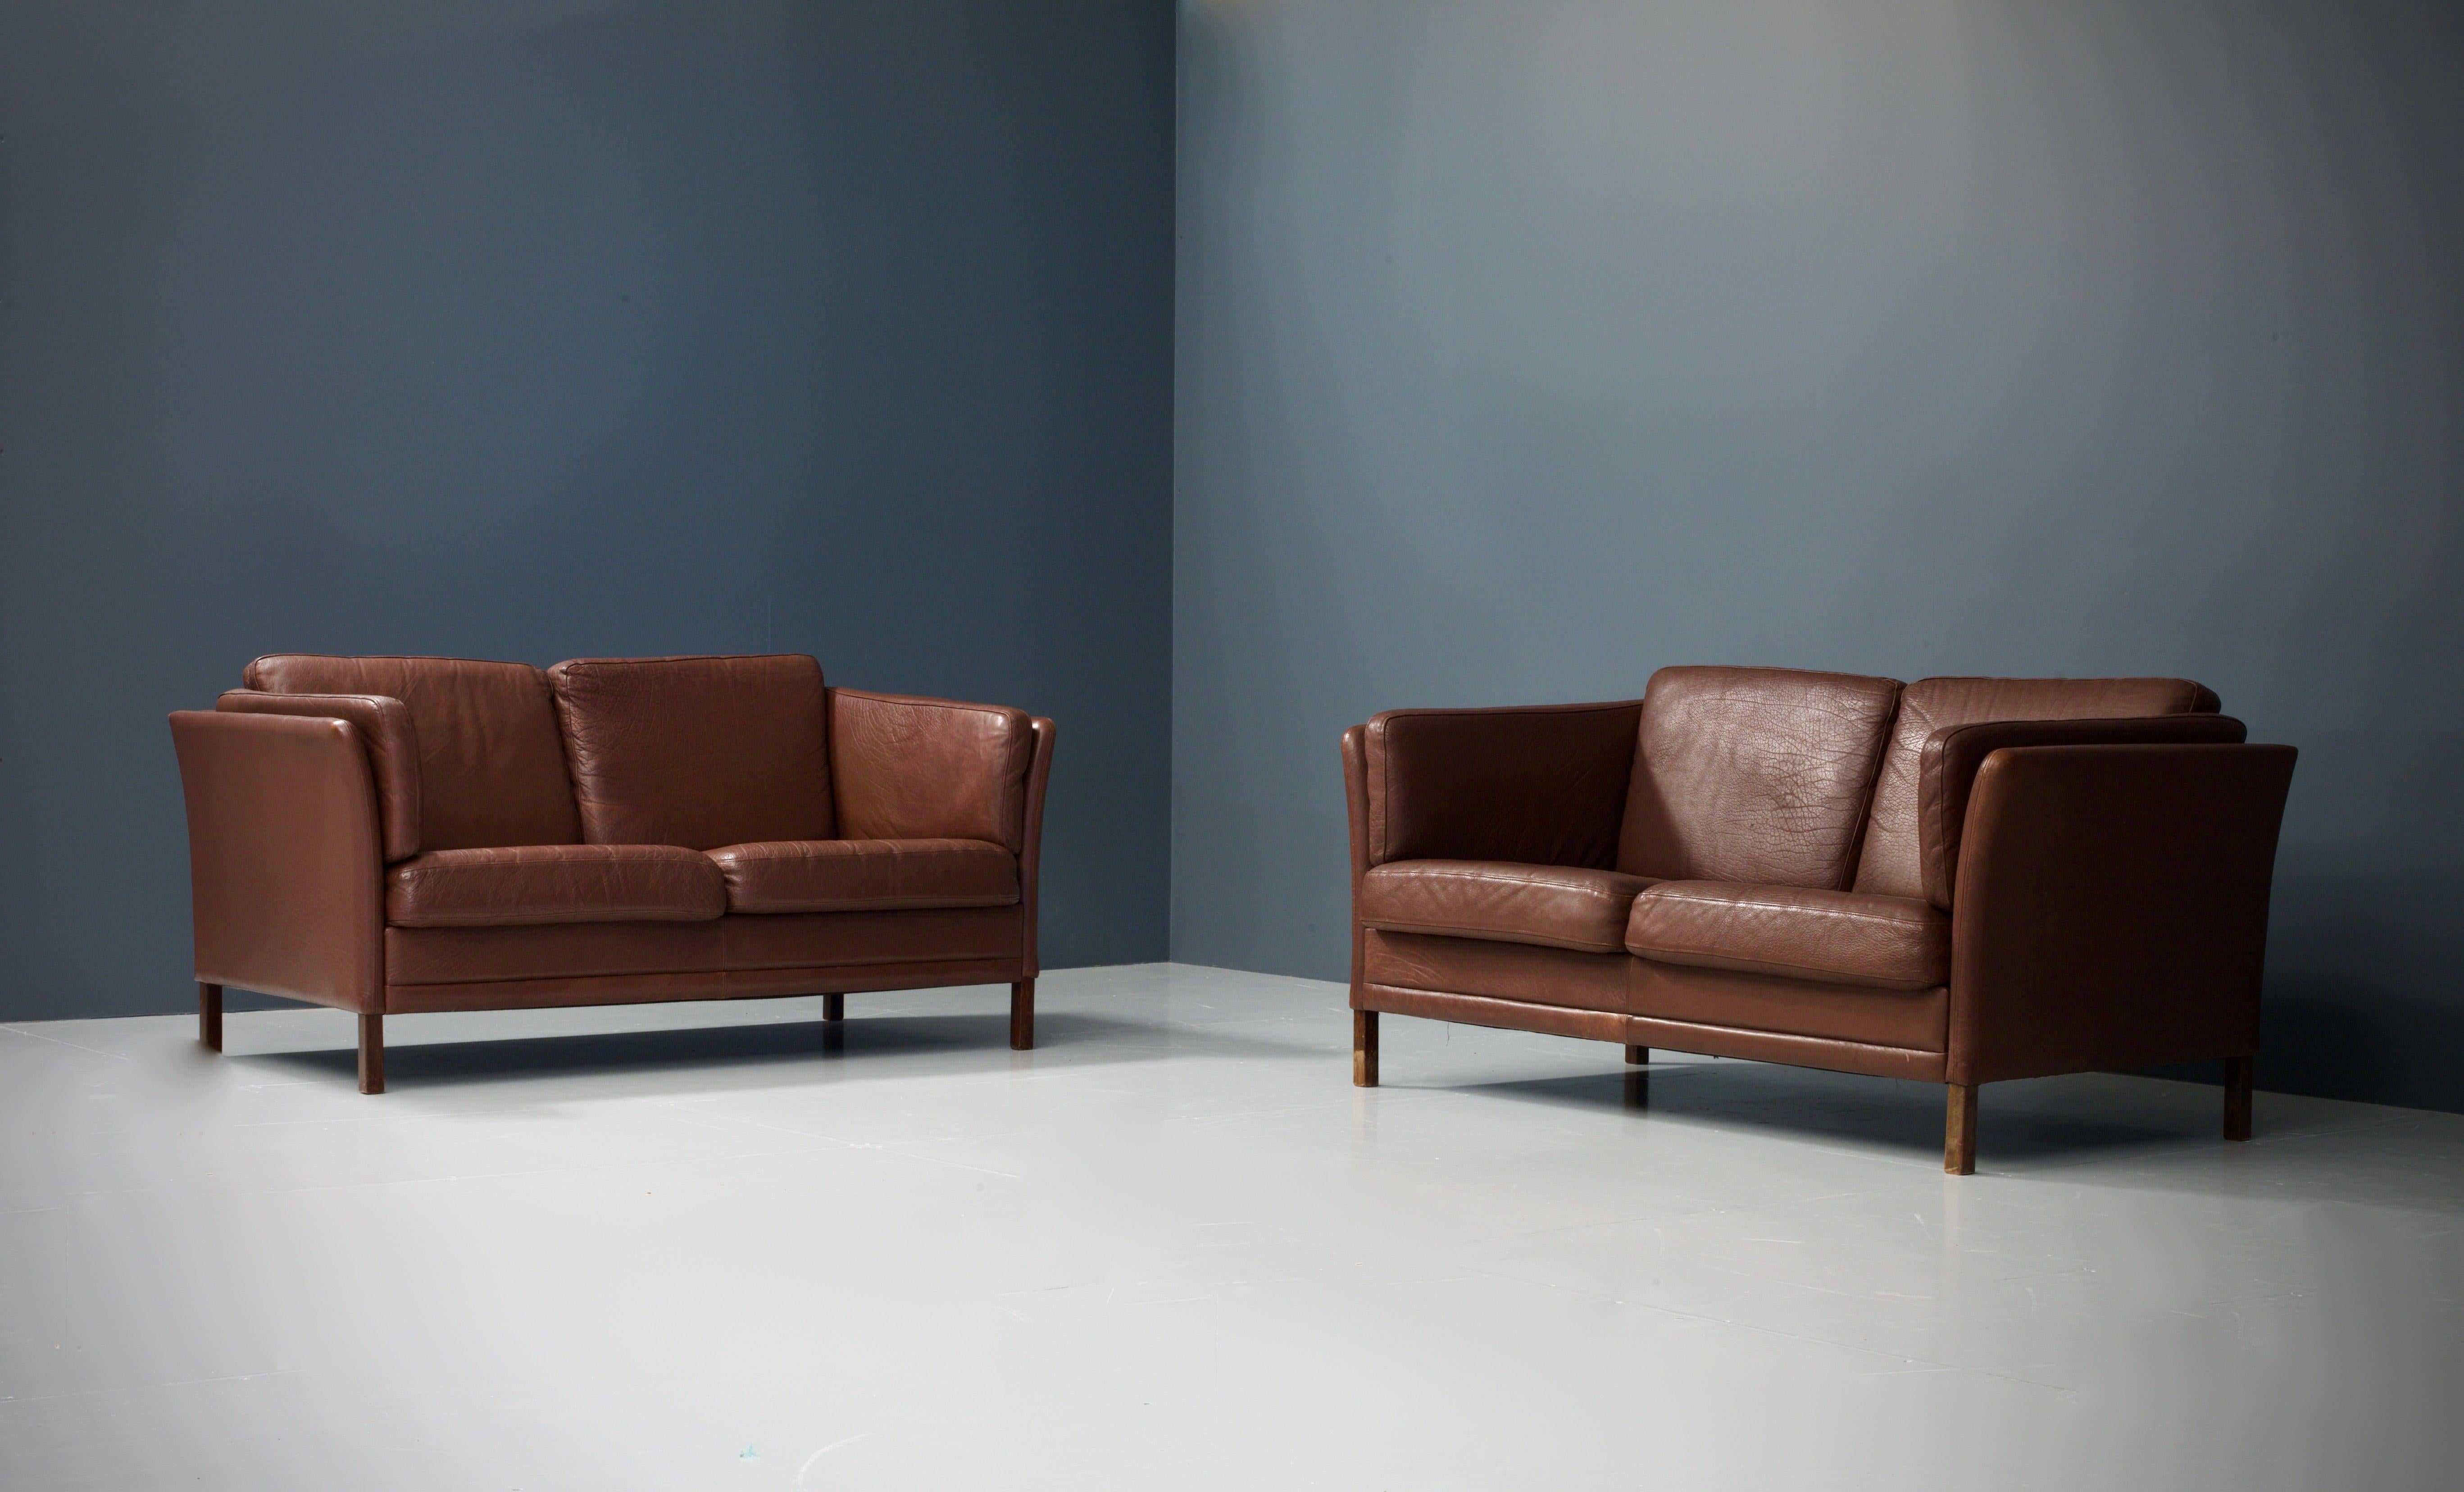 Diese außergewöhnlichen auberginefarbenen Sofas aus den sechziger Jahren sind nach dem hohen Standard eines der führenden dänischen Möbelhersteller, Mogens Hansen, gefertigt. Das Design ist minimalistisch, aber mit viel Liebe zum Detail gestaltet,